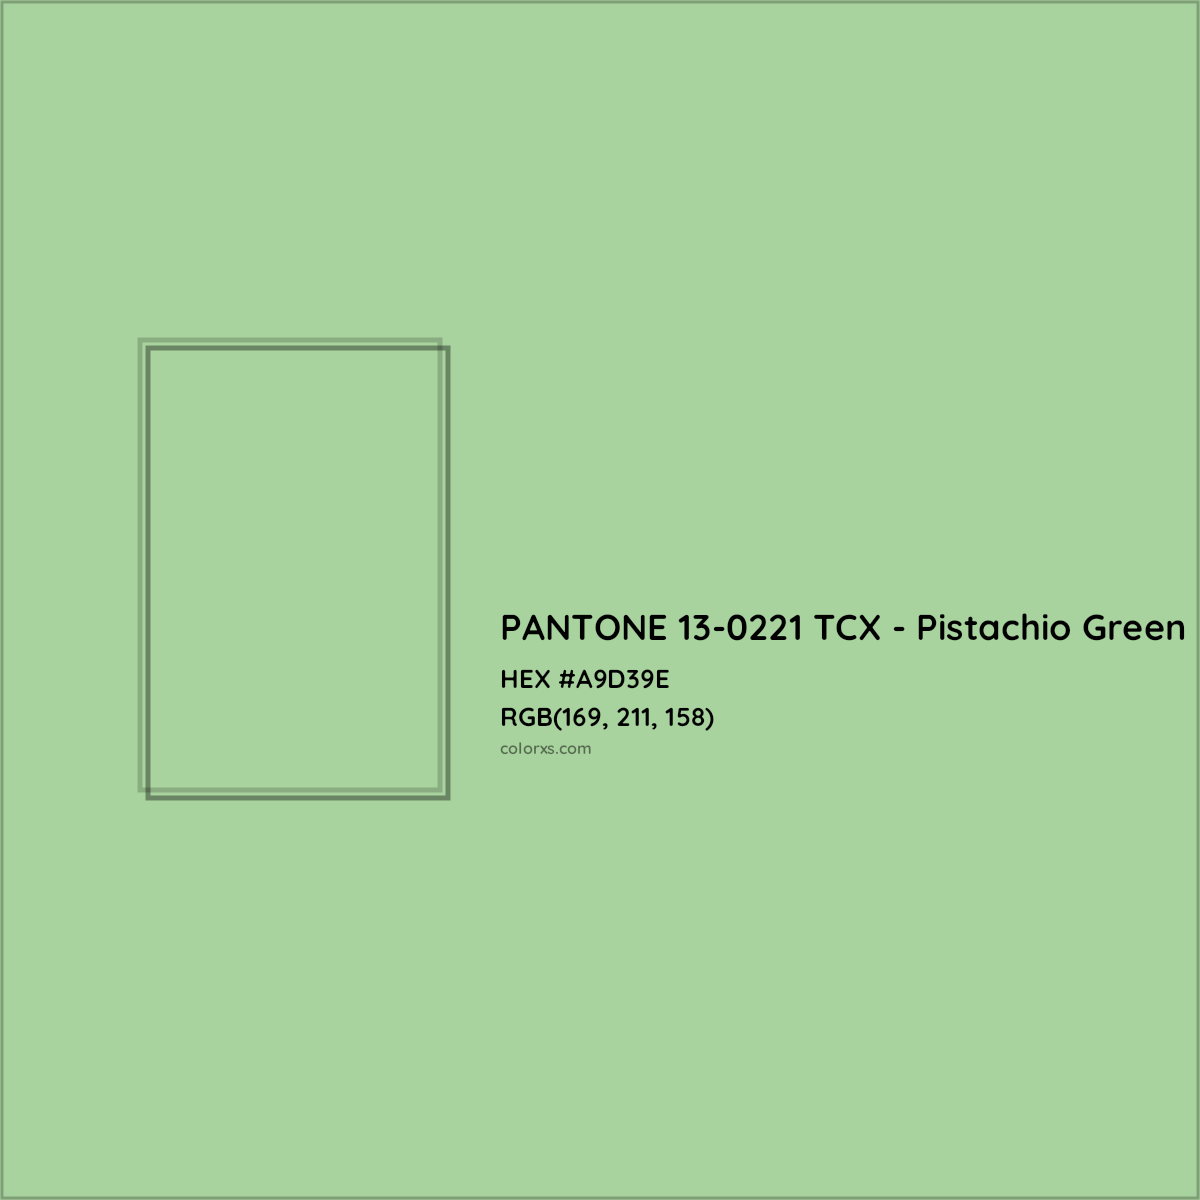 HEX #A9D39E PANTONE 13-0221 TCX - Pistachio Green CMS Pantone TCX - Color Code